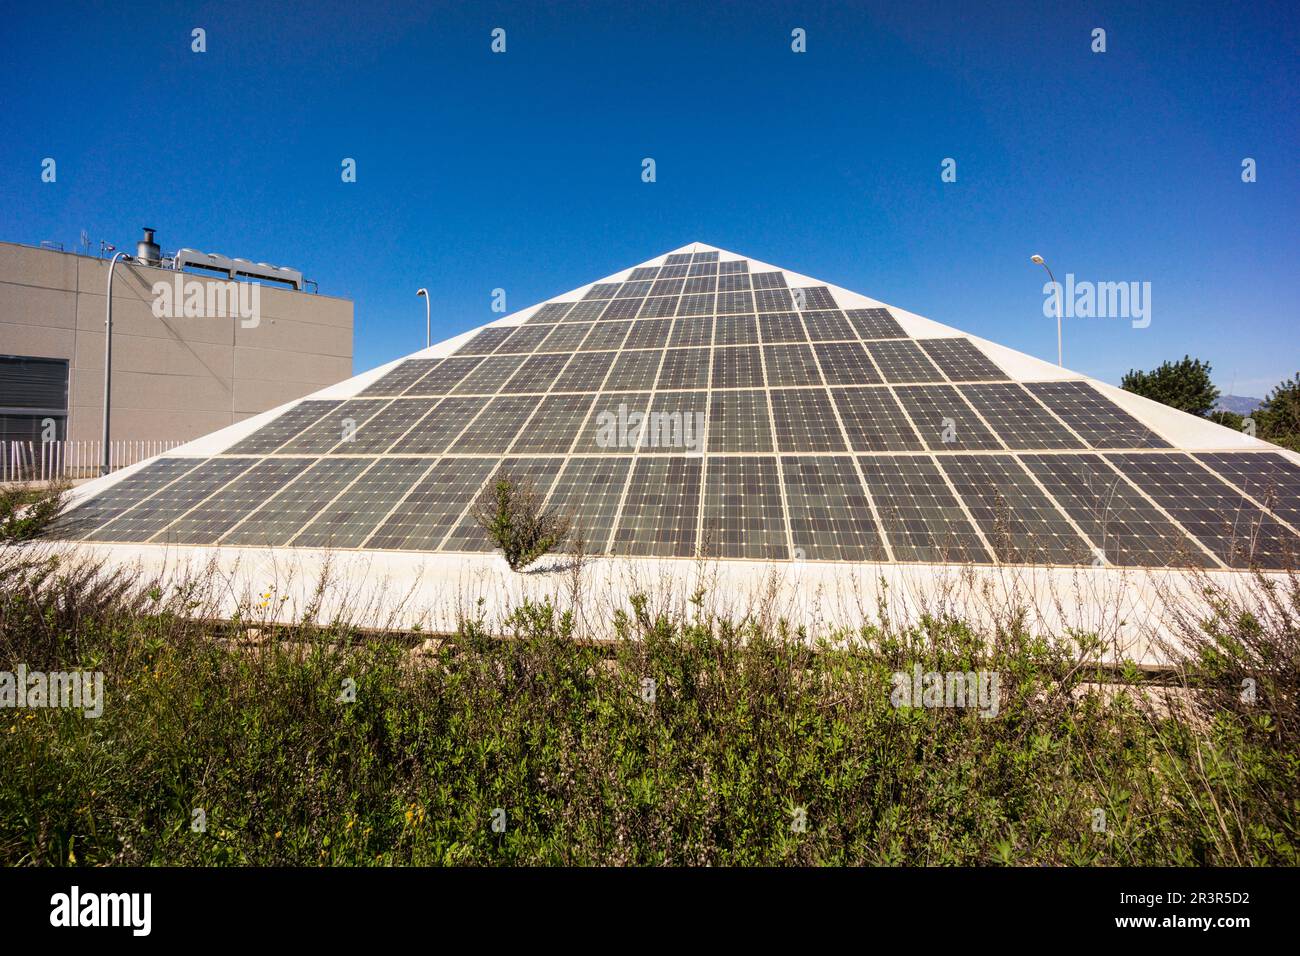 placas fotovoltaicas, Parc BIT,Parque Balear de Innovación Tecnológica, Mallorca, balearic islands, spain, europe. Stock Photo